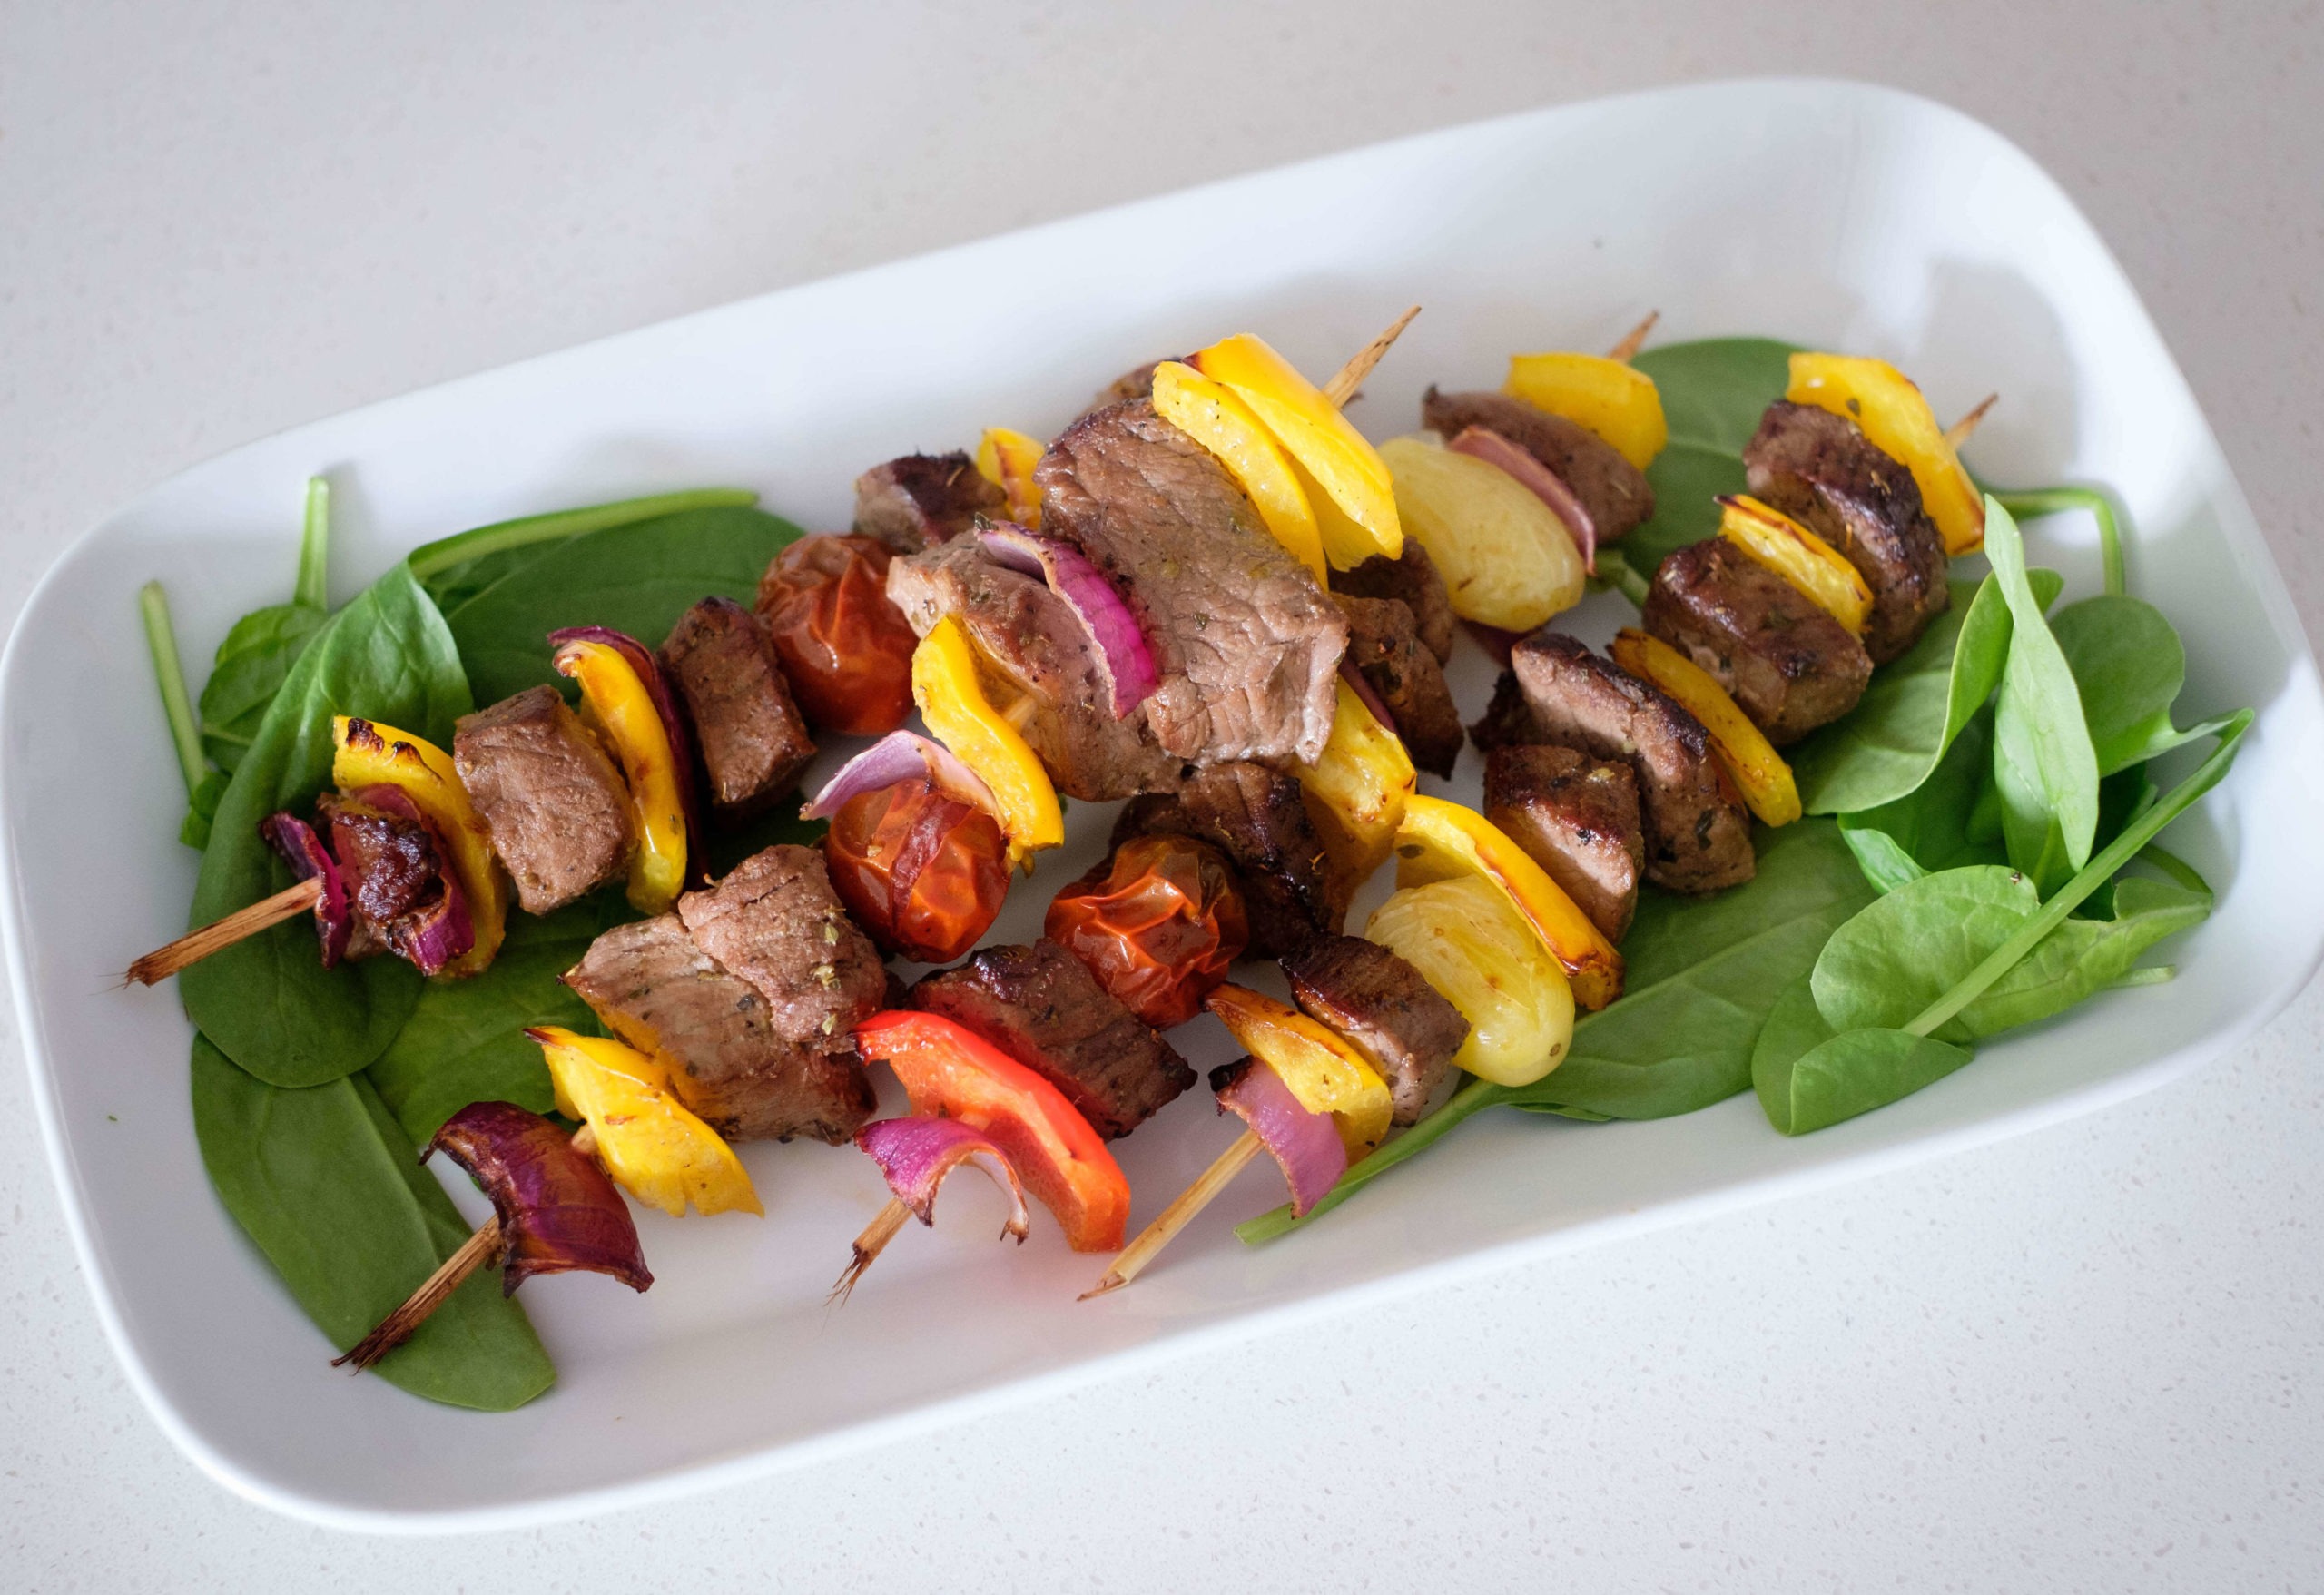 Grilled steak kebabs is skewered food that is fun to eat, Lifestyles